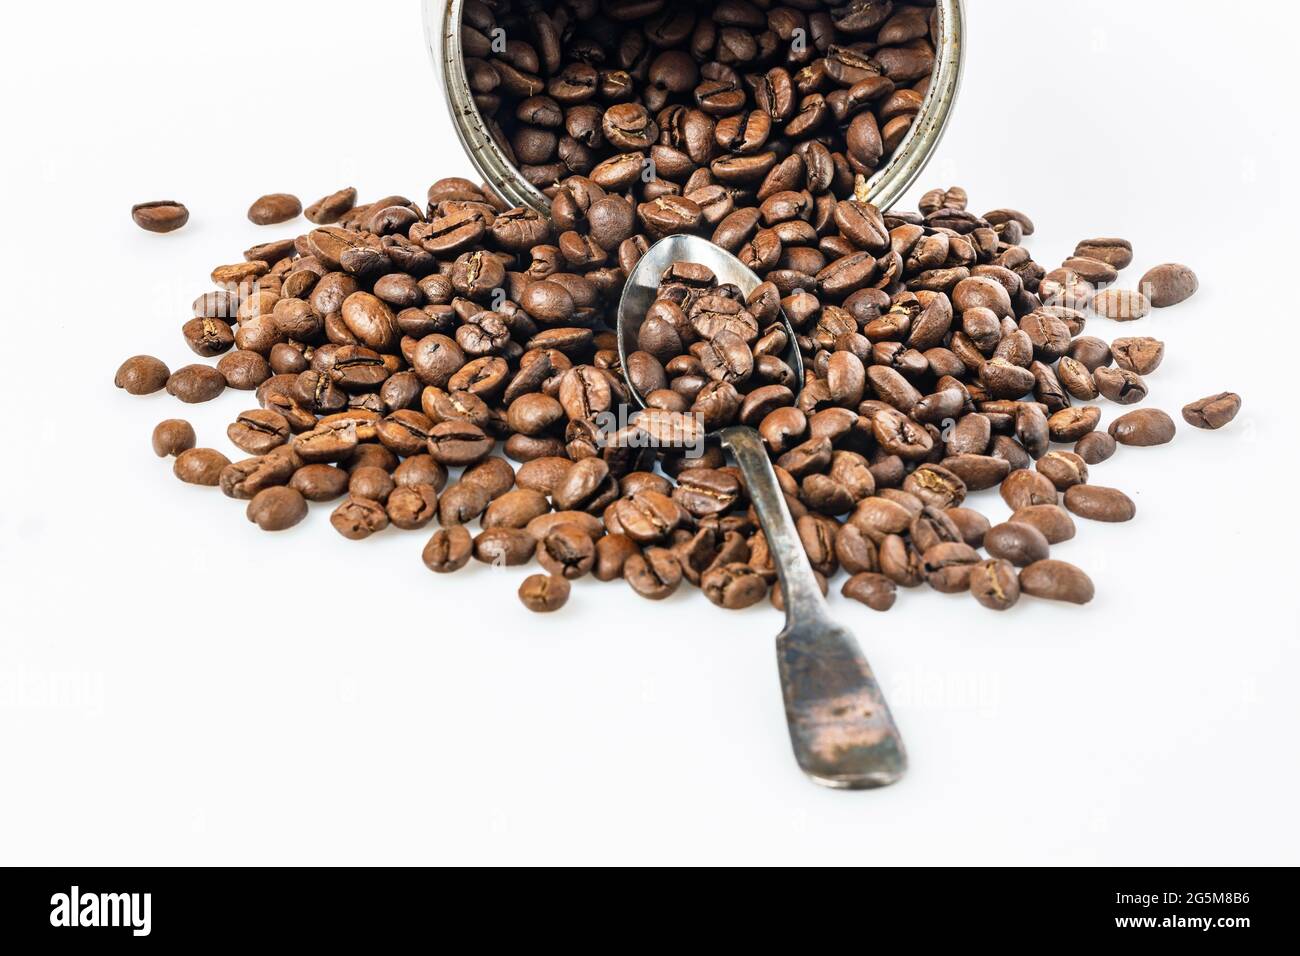 Lattina aperta e grani di caffè nero su sfondo bianco. Fagioli arabica arrostiti profumati su un tavolo bianco. Bevanda tradizionale del mattino. Spazio di copia. Foto Stock